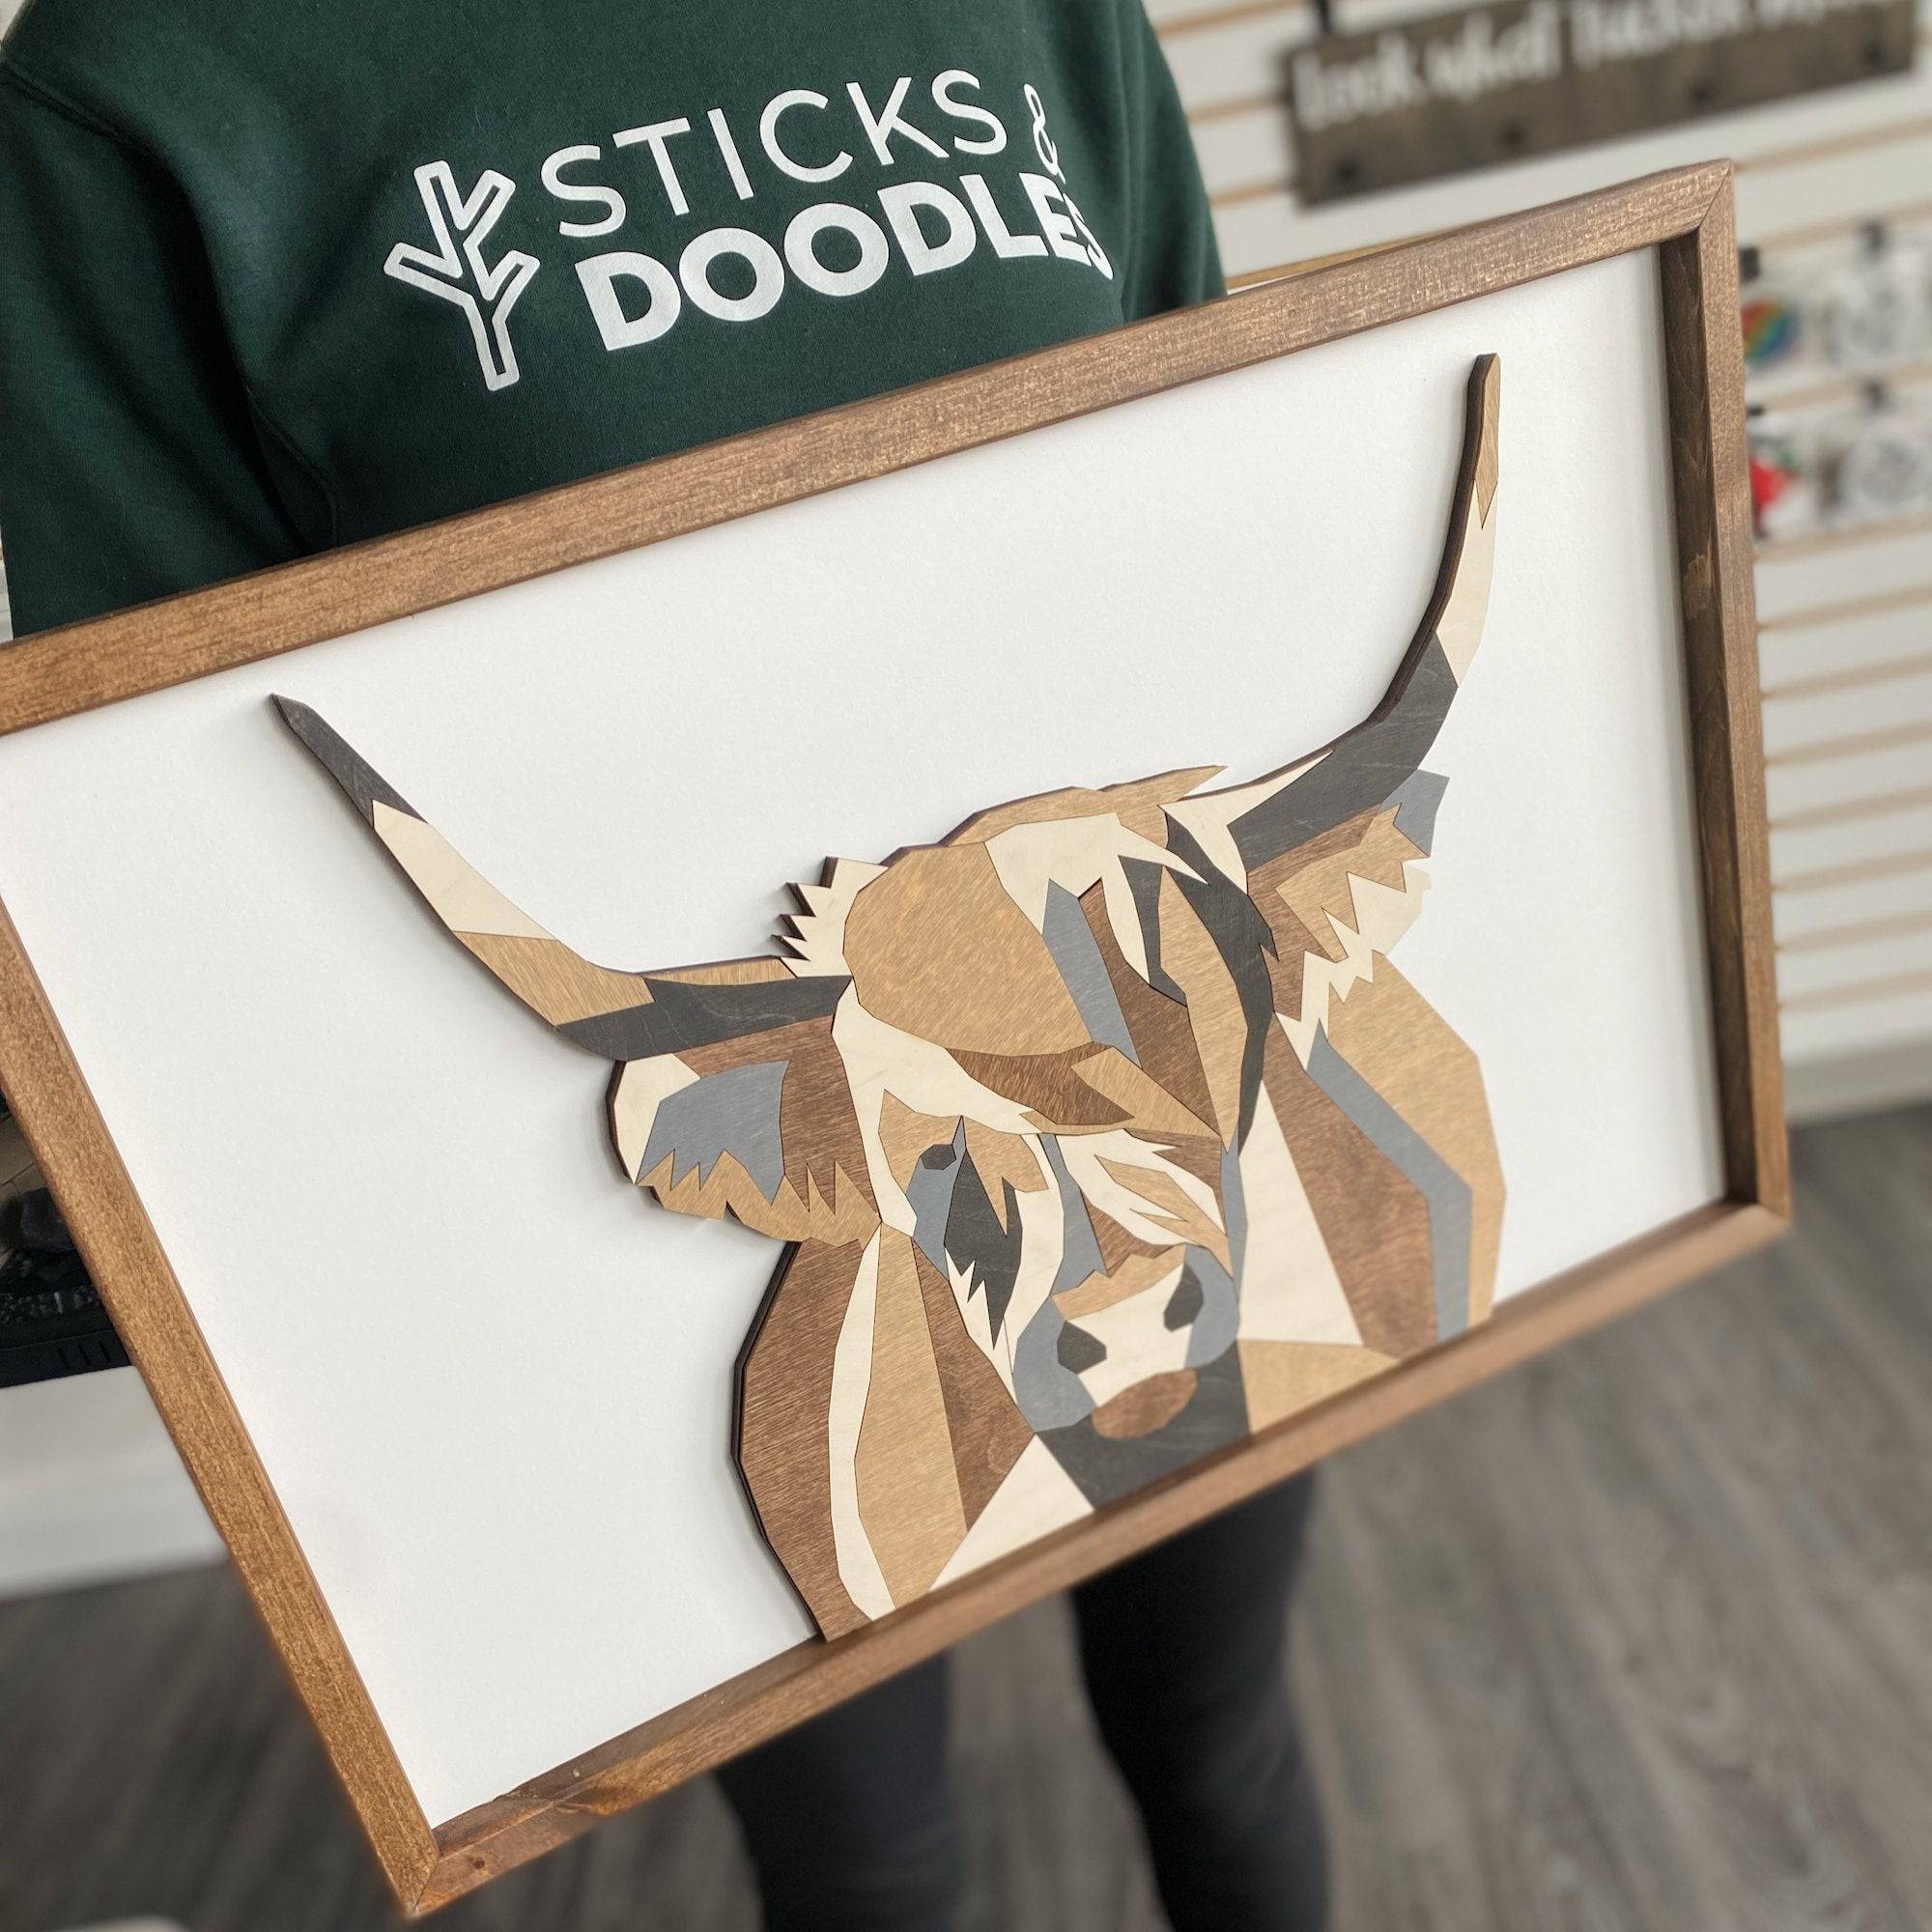 Highland Cow 3D Multilayer Wood Sign - Sticks & Doodles